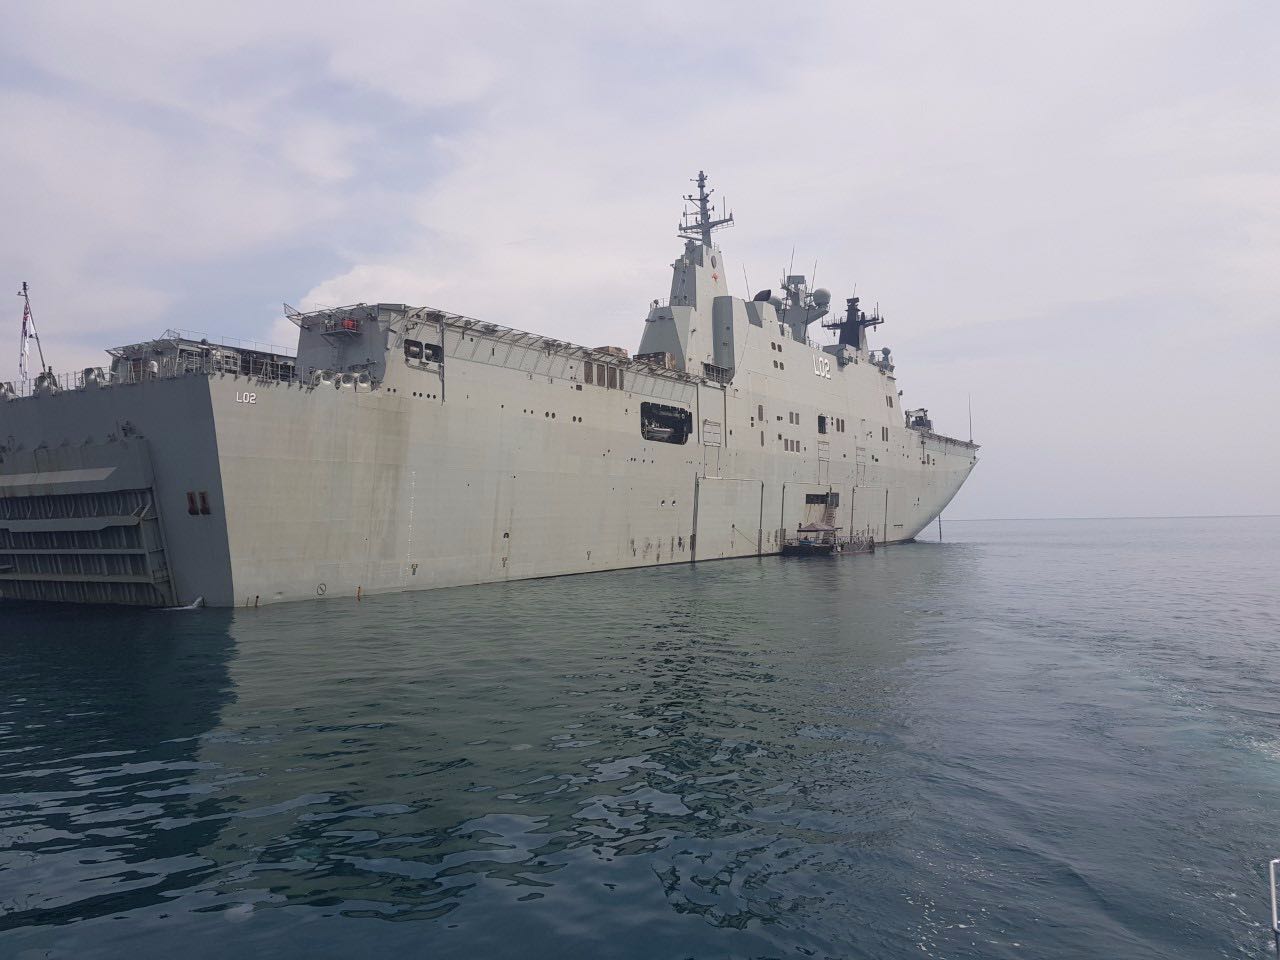 La Trobe aboard the HMAS Canberra